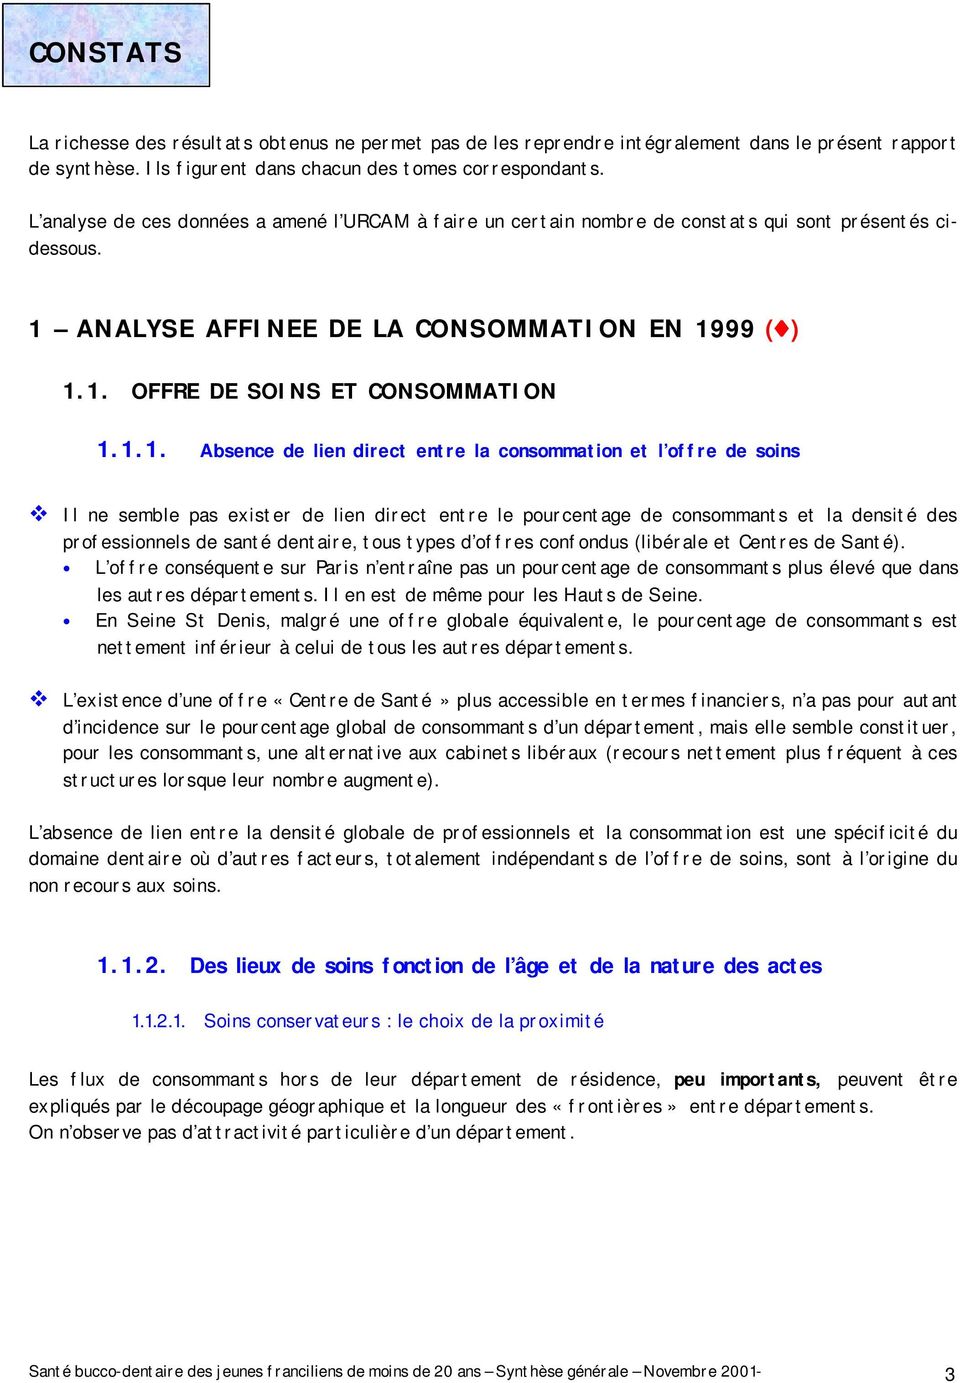 ANALYSE AFFINEE DE LA CONSOMMATION EN 19